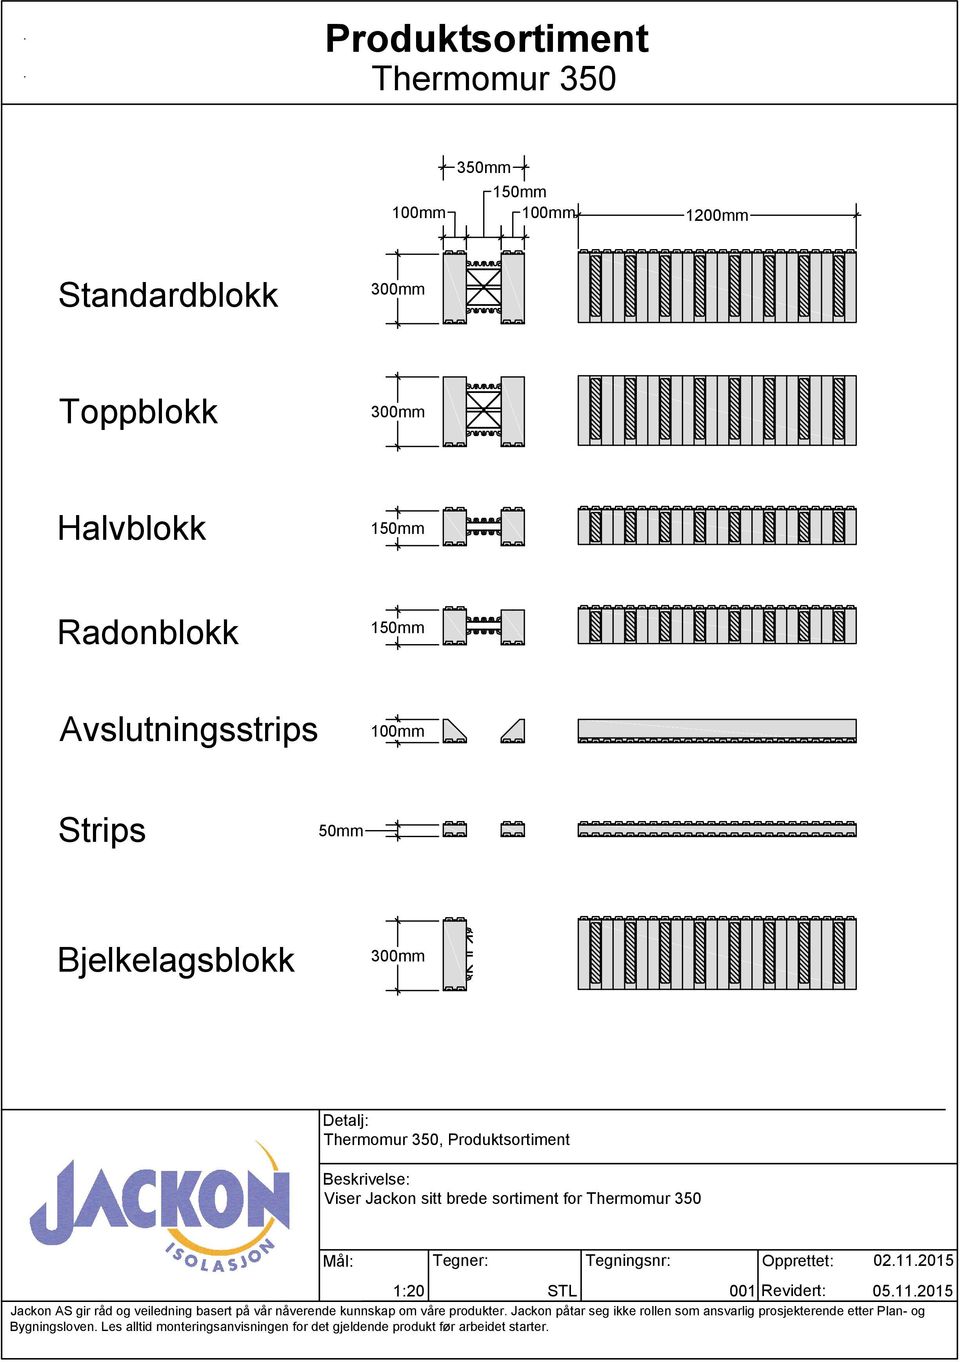 Strips 50mm Bjelkelagsblokk, Produktsortiment Viser